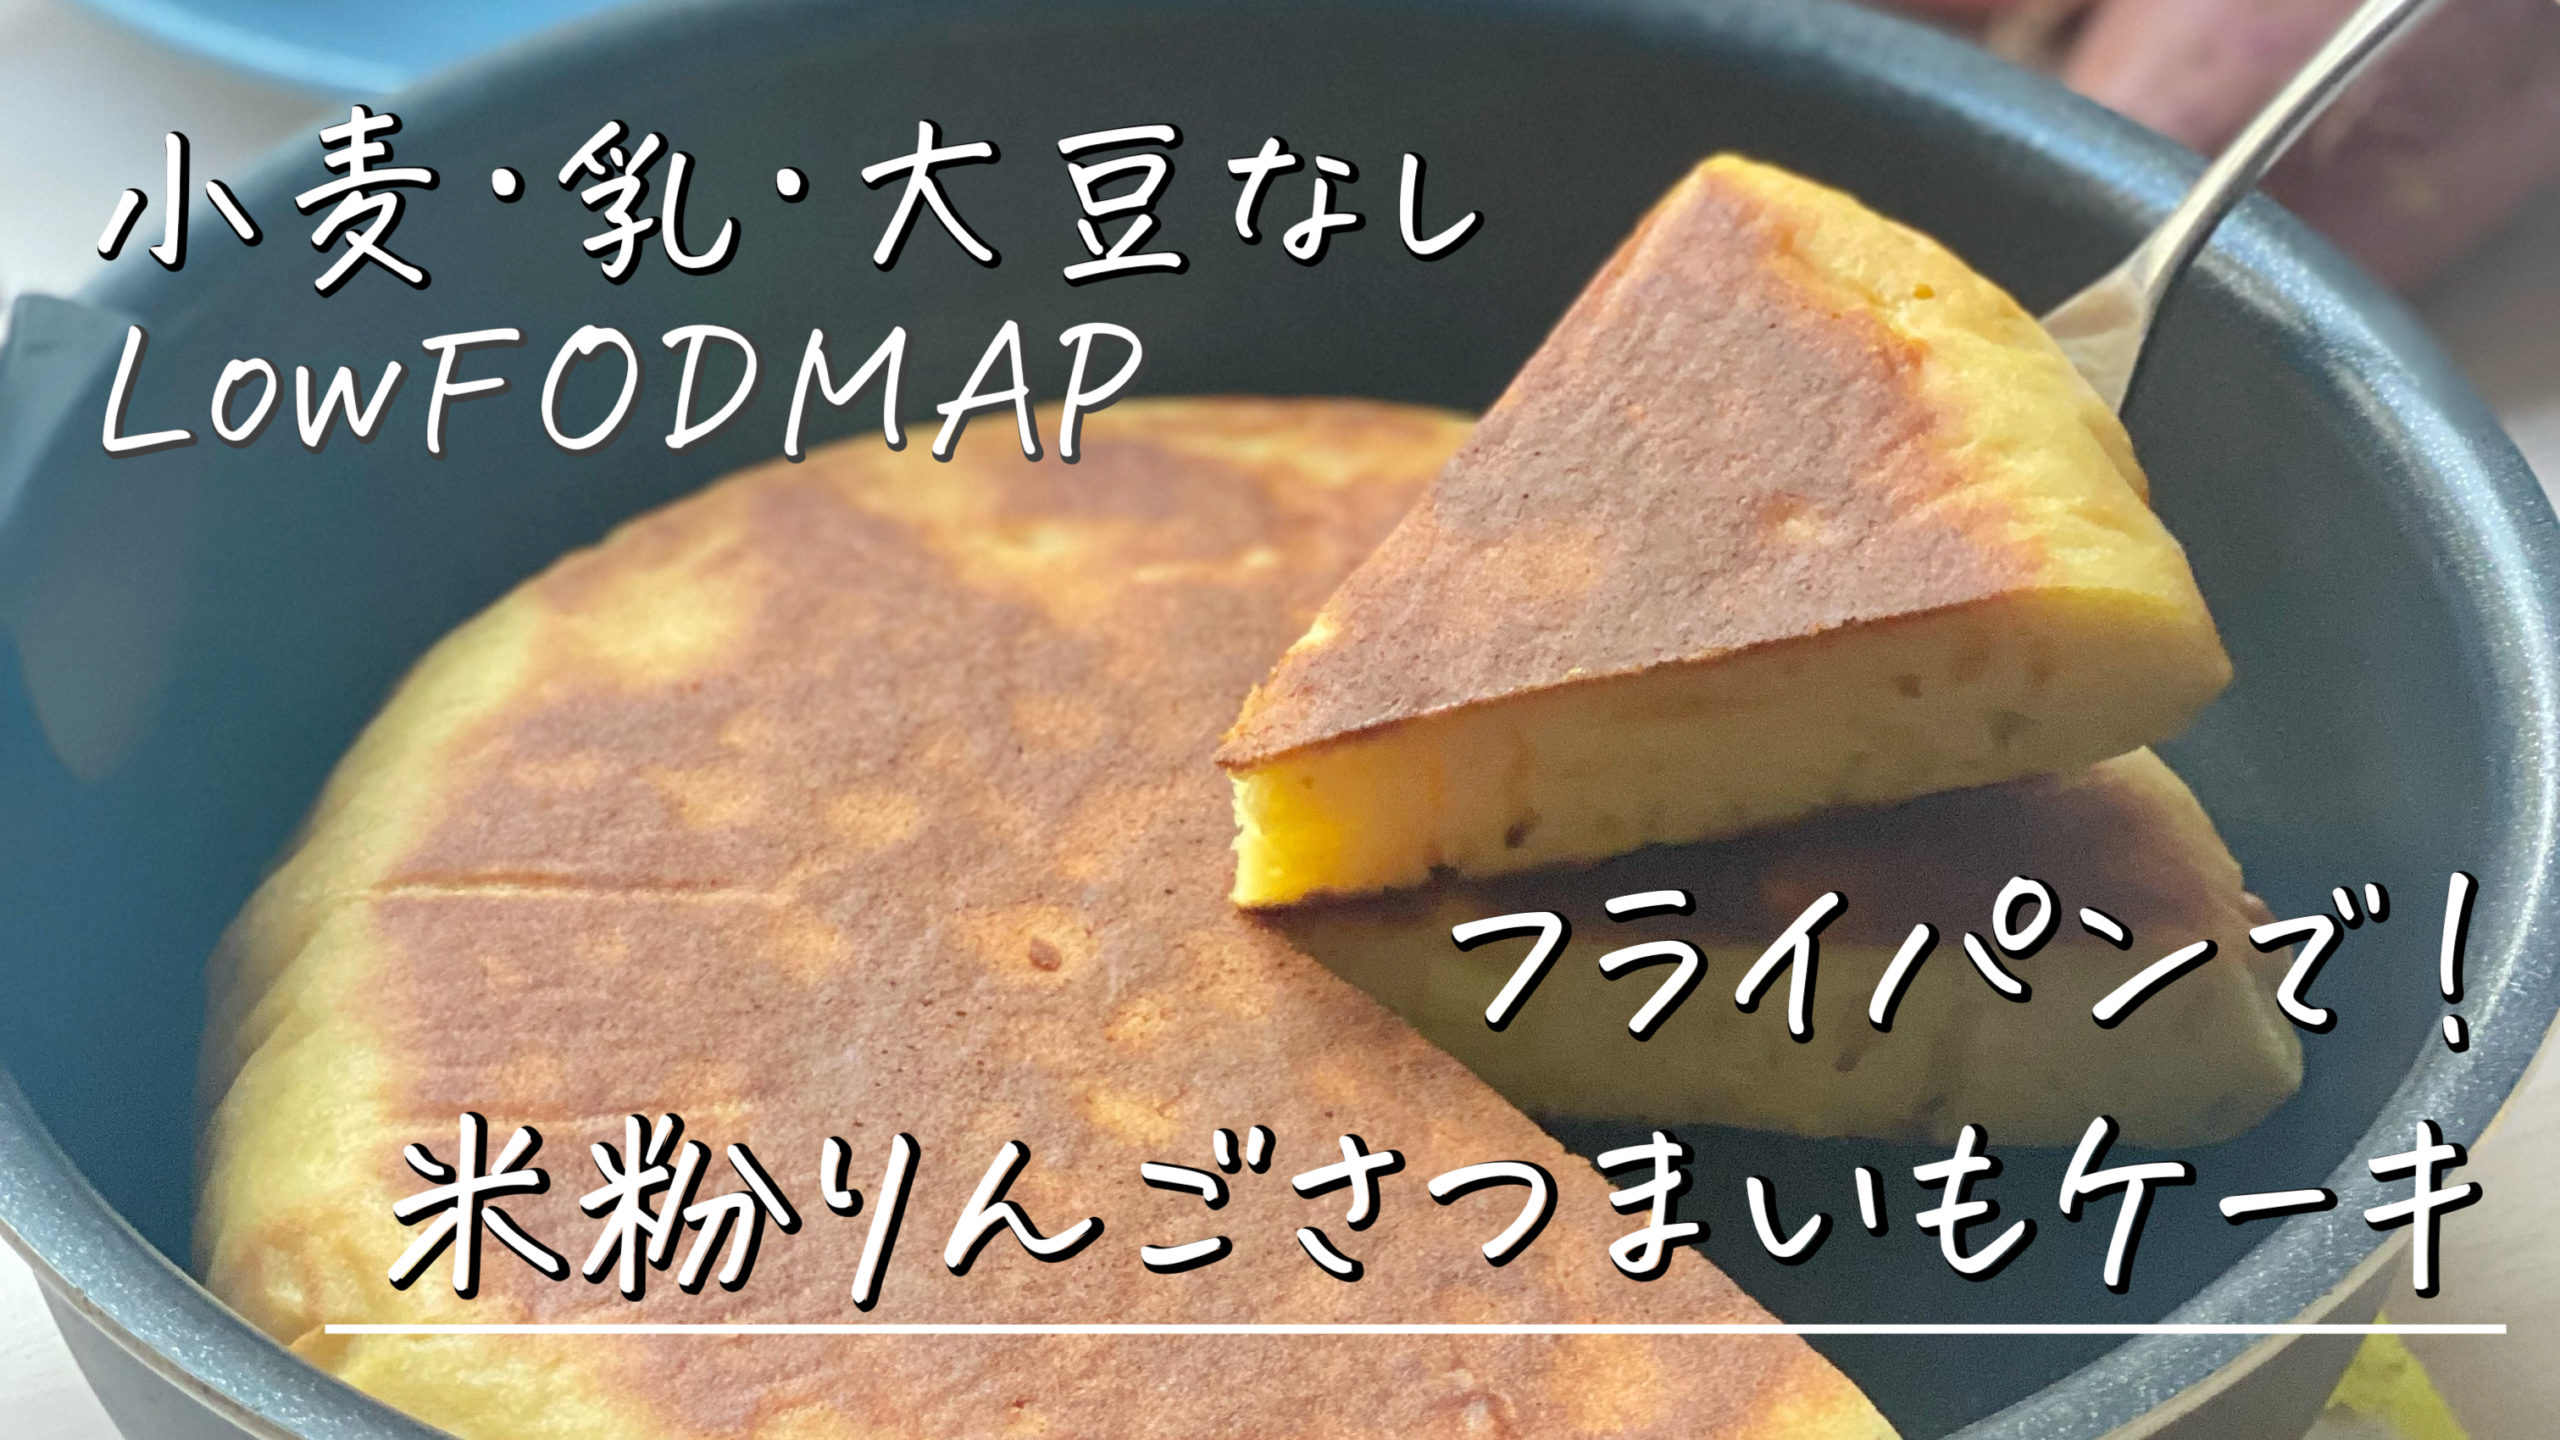 low-fodmap-recipe-of-rice-flour-apple-sweetpotato-cake-in-pan